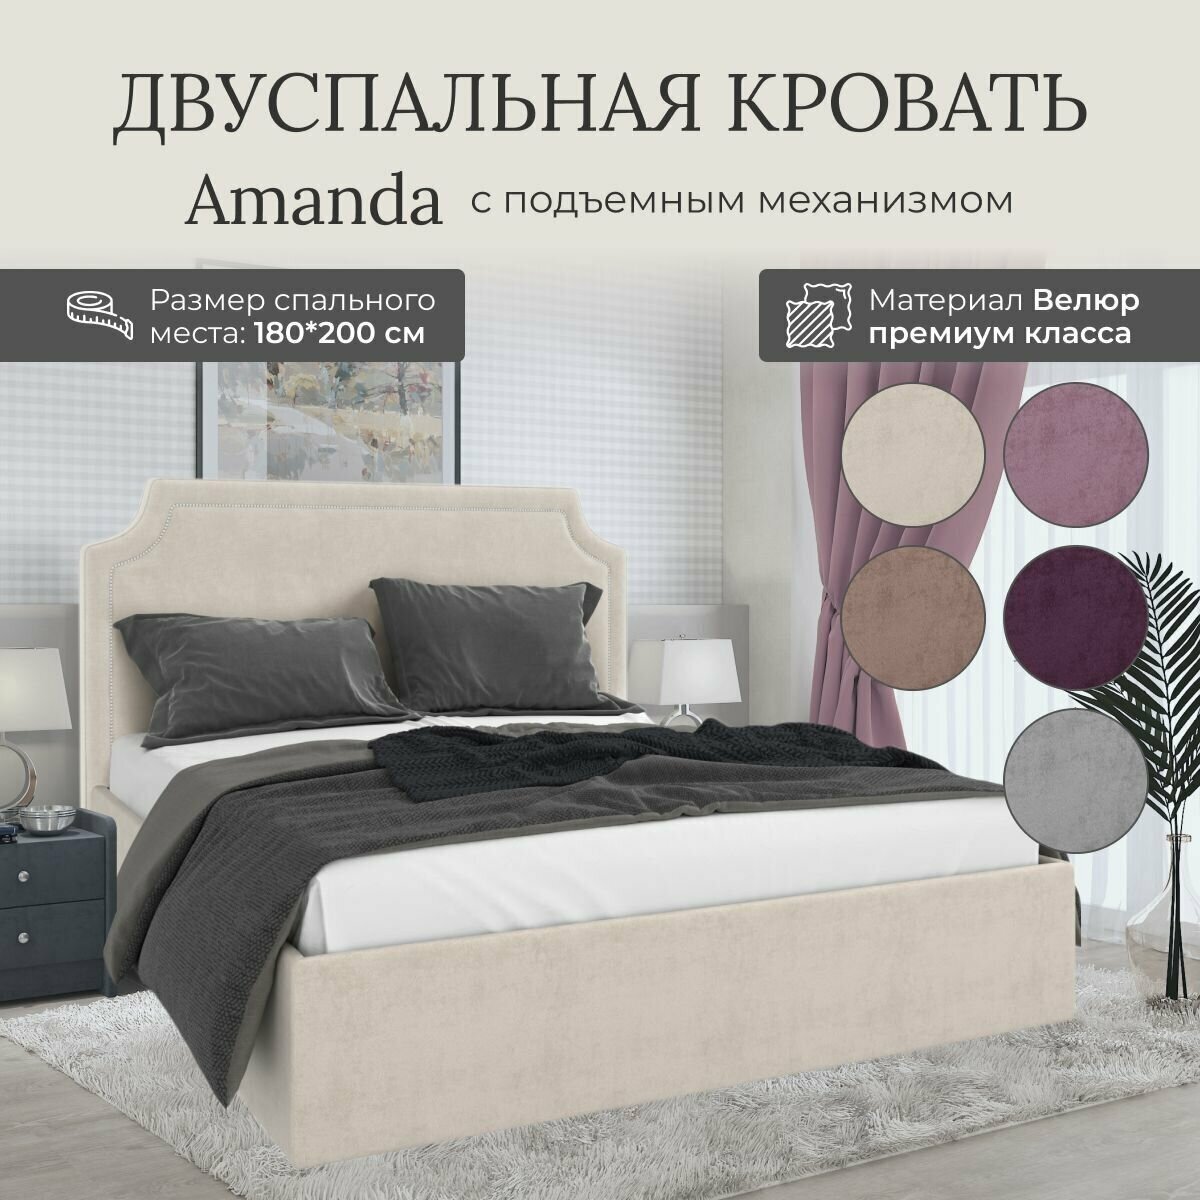 Кровать с подъемным механизмом Luxson Amanda двуспальная размер 180х200